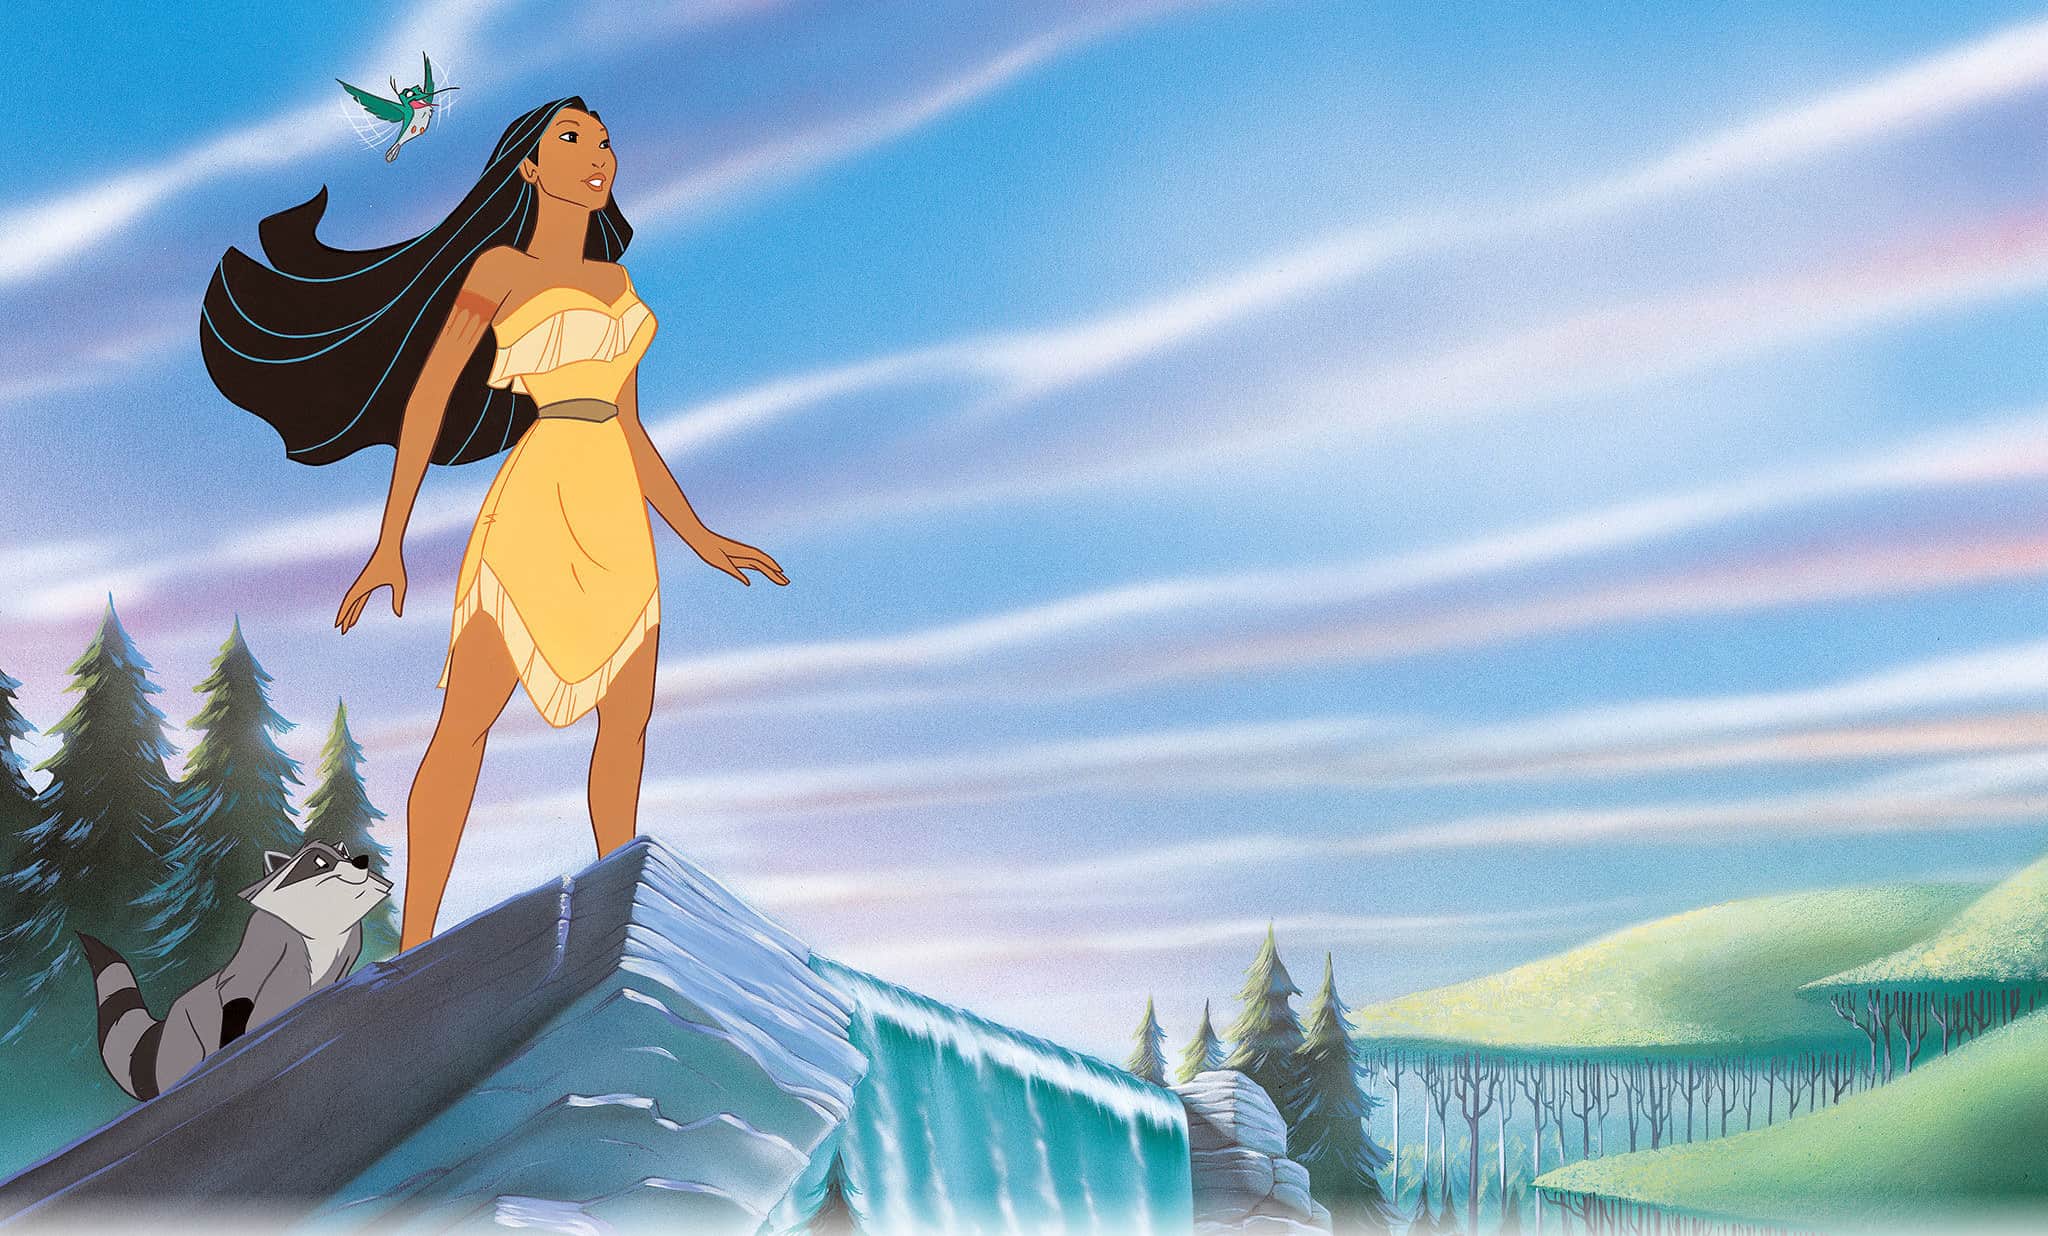 Pocahontas Pocahontas Pocahontas Disney Movie Disney vrogue.co